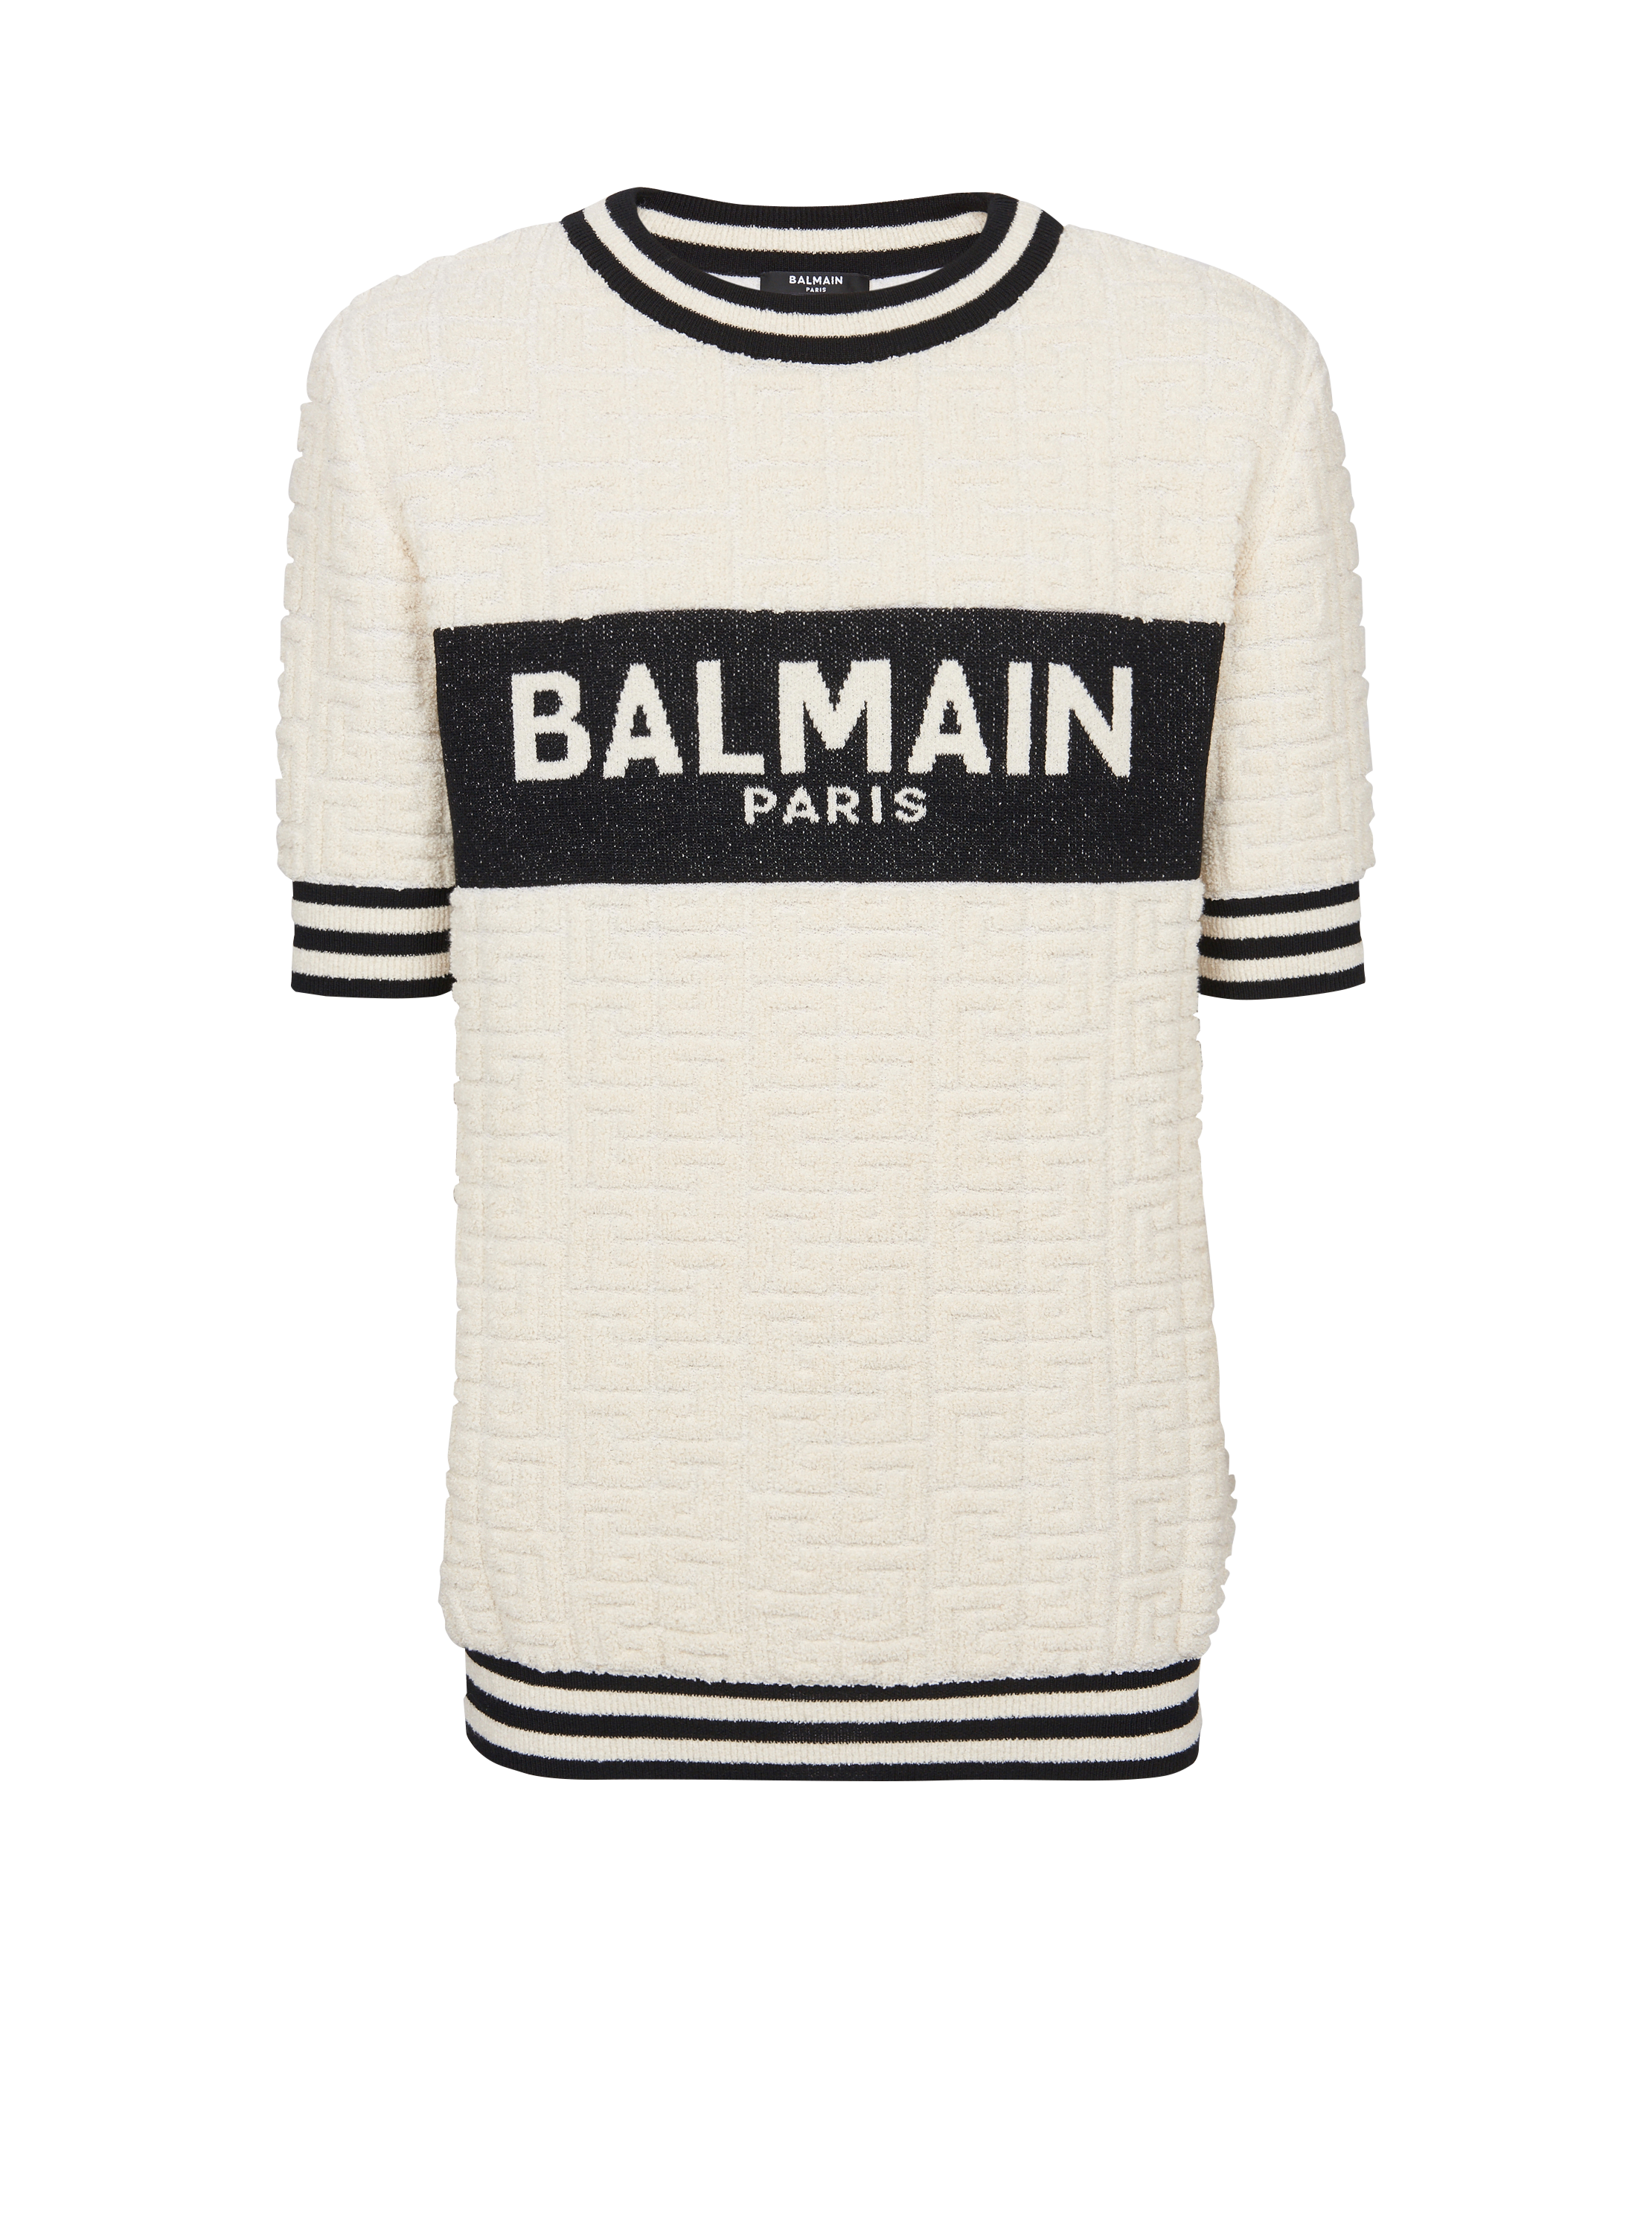 Balmain T-shirt aus Baumwoll-Frottee, WeiB, hi-res